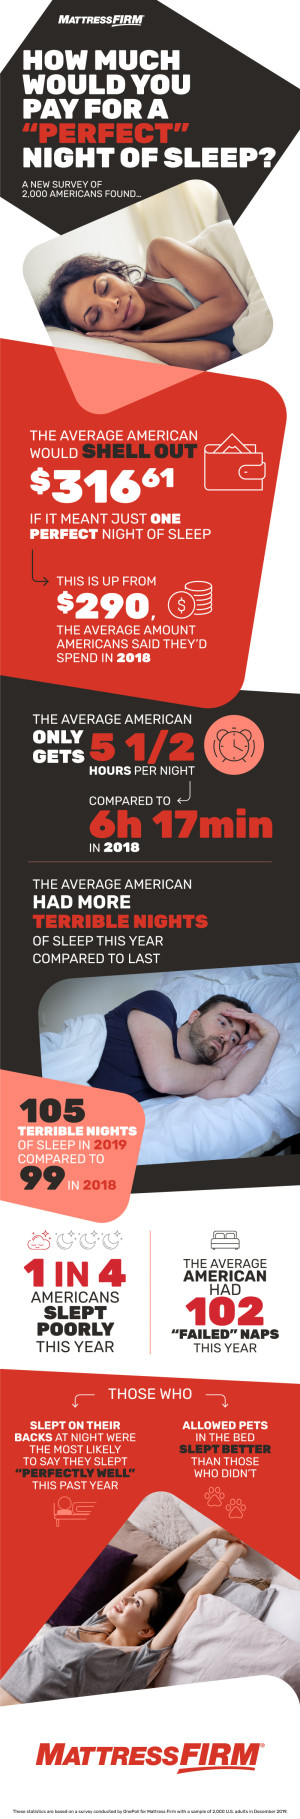 2019年美国人的睡眠时间比2018年少